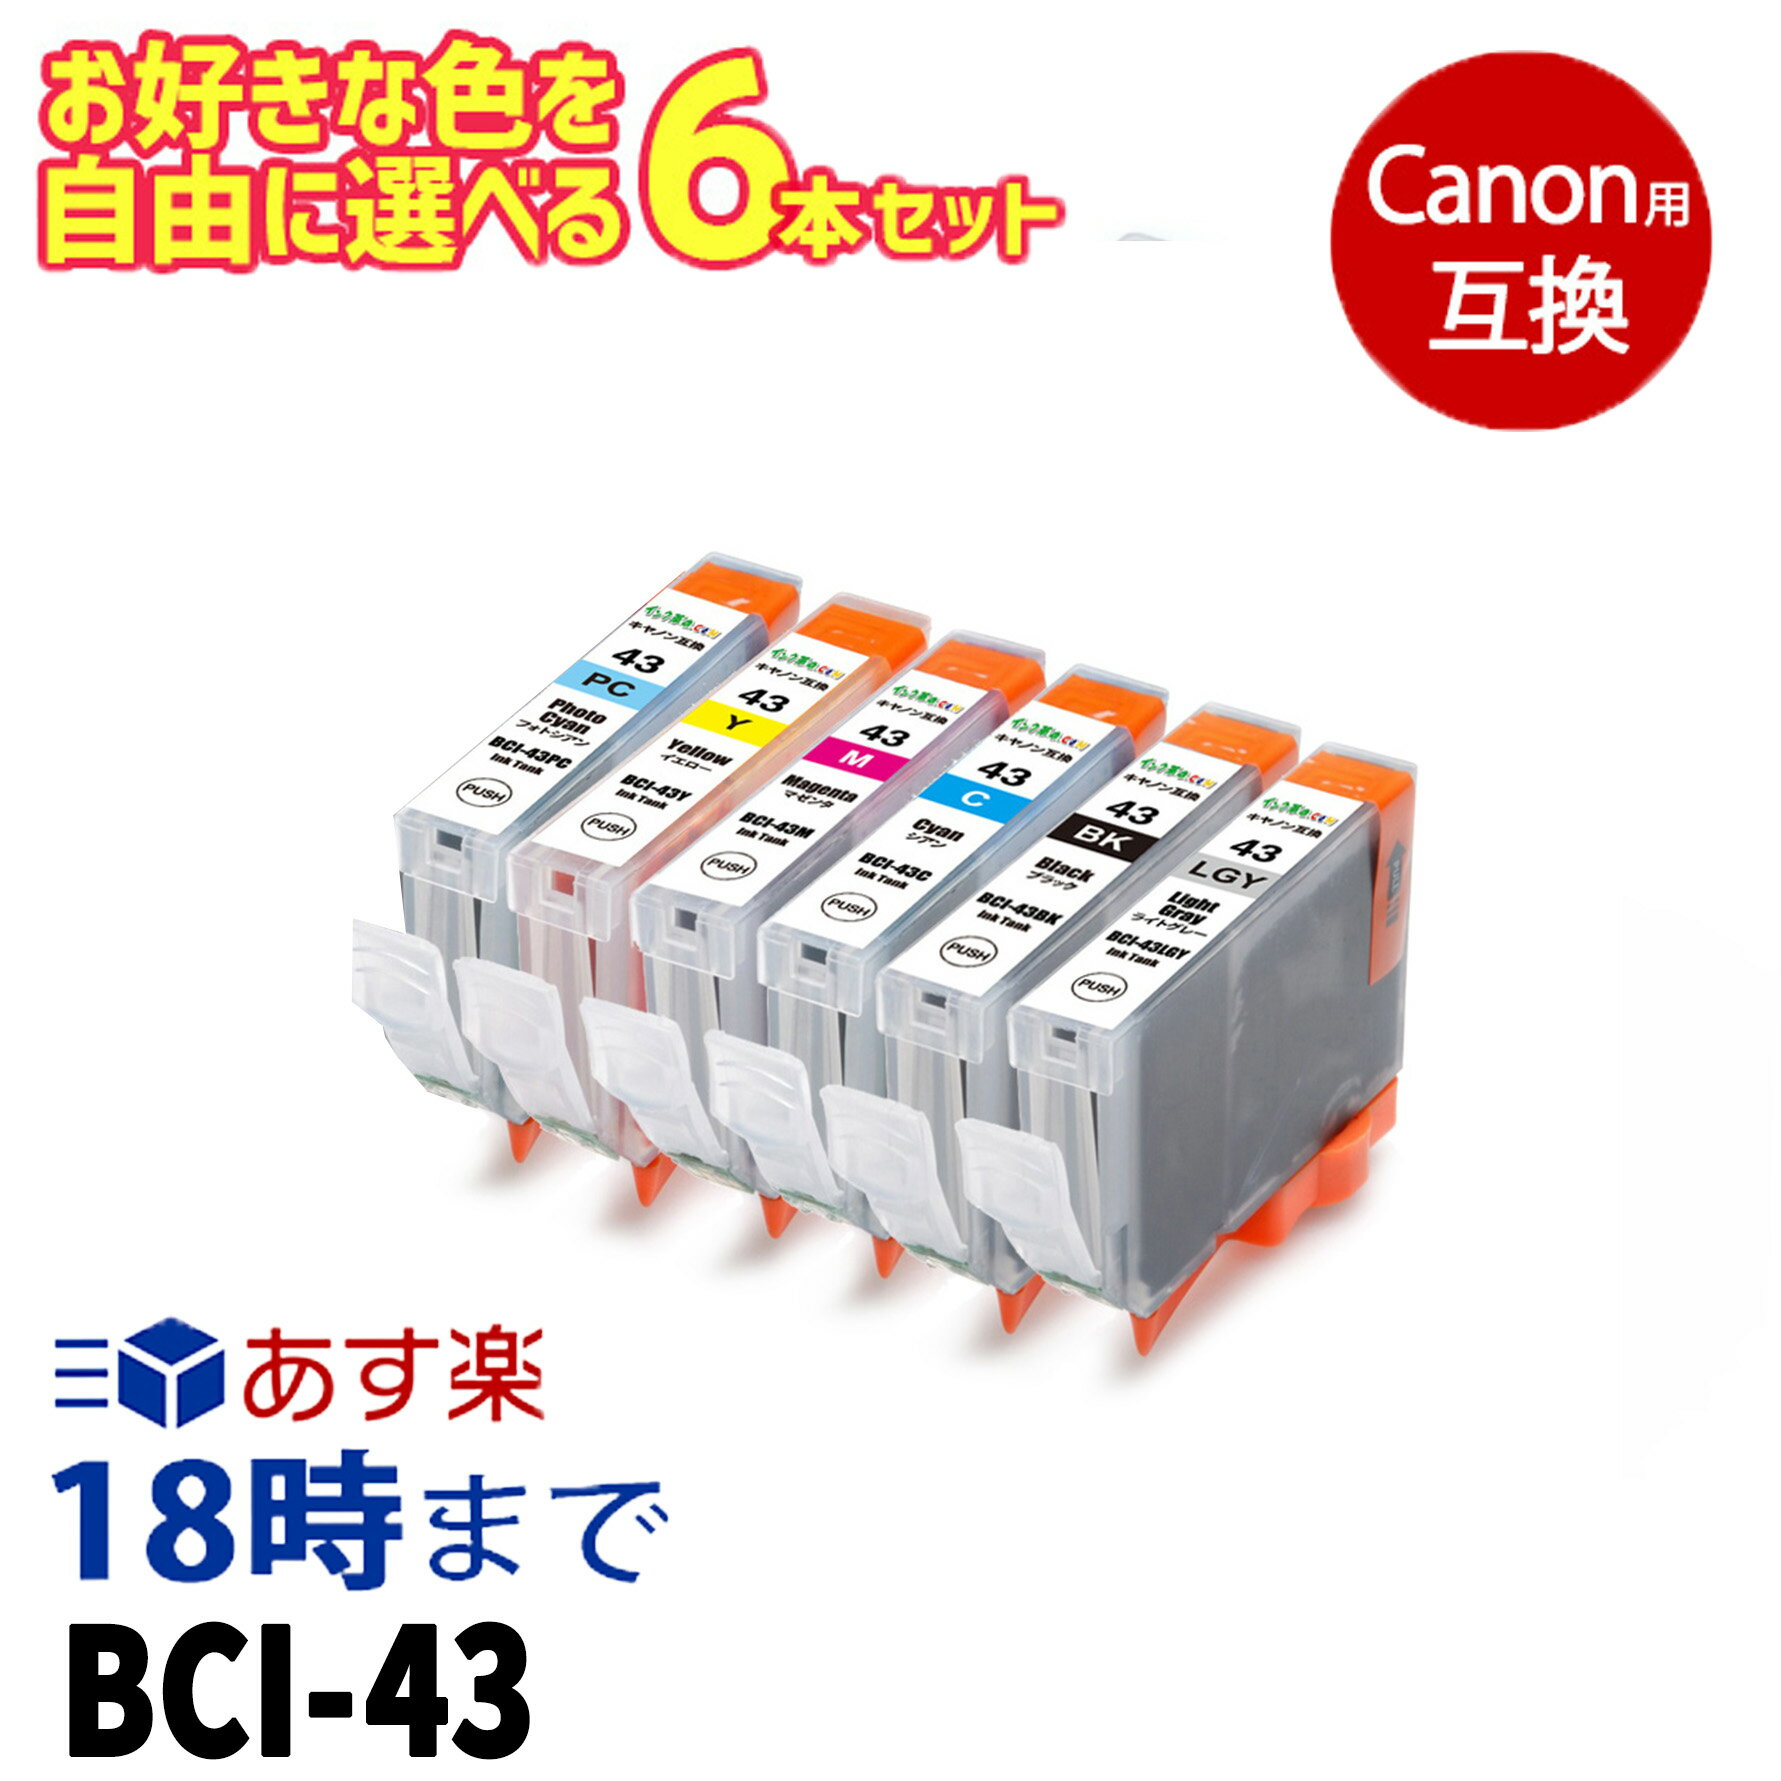 自由に選べる 6本セット BCI-43 キヤノン Canon 互換インク ICチップ付き インク福袋 福袋【インク革命】